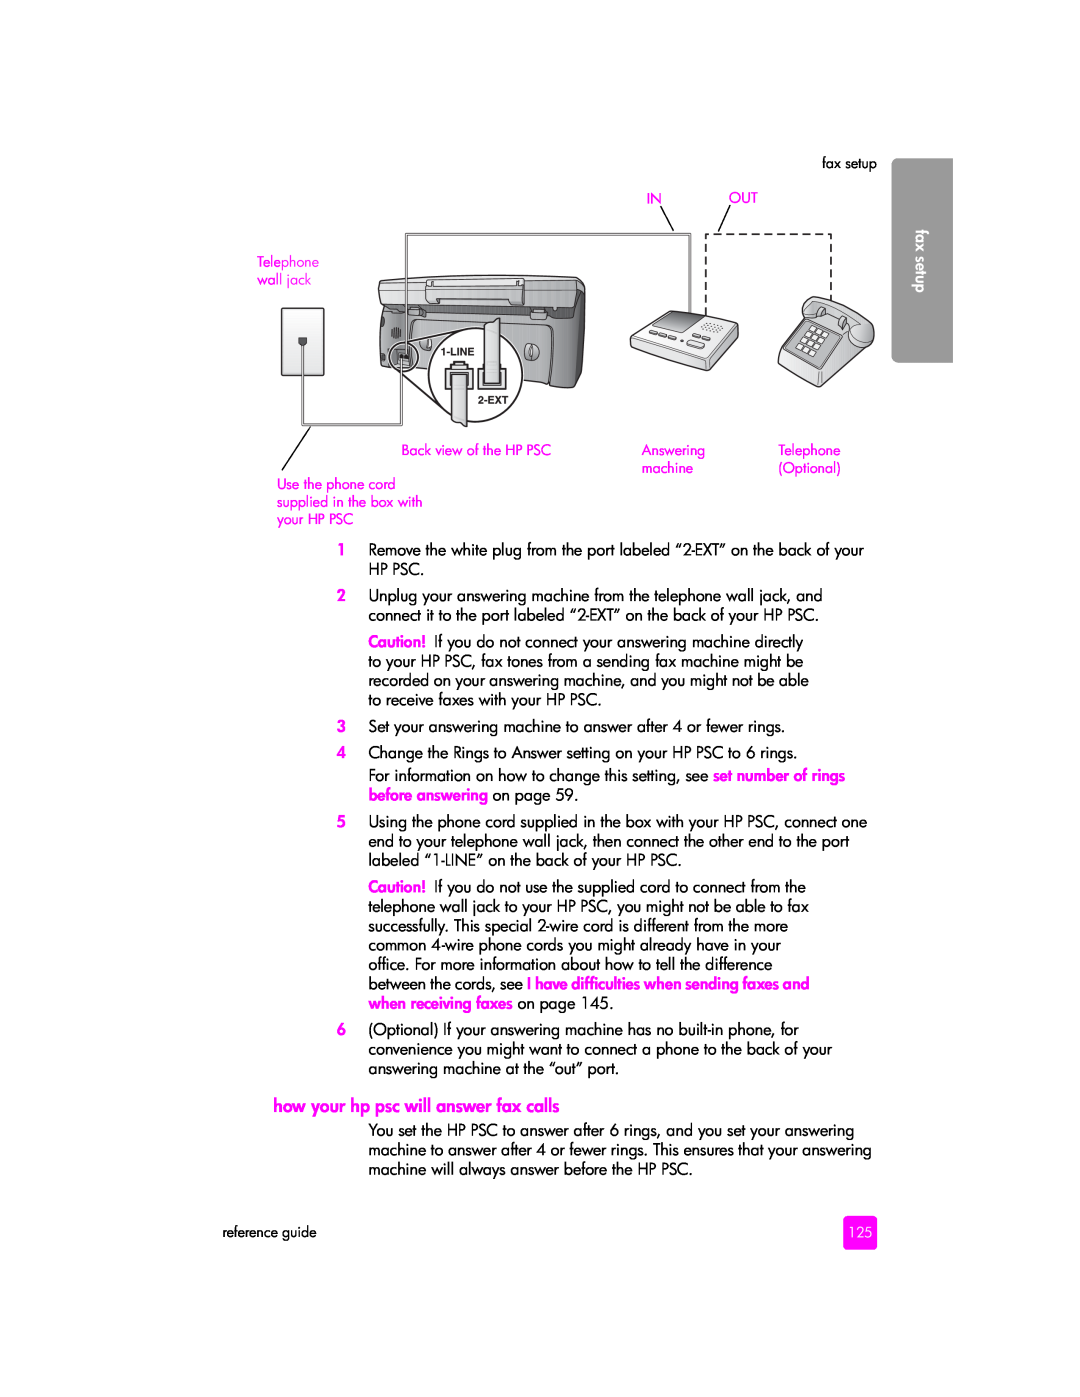 HP 2400 2405 (Q3086A), 2400 2420 (Q3085A), 2400 2410xi (Q3088A) manual how your hp psc will answer fax calls, fax setup 